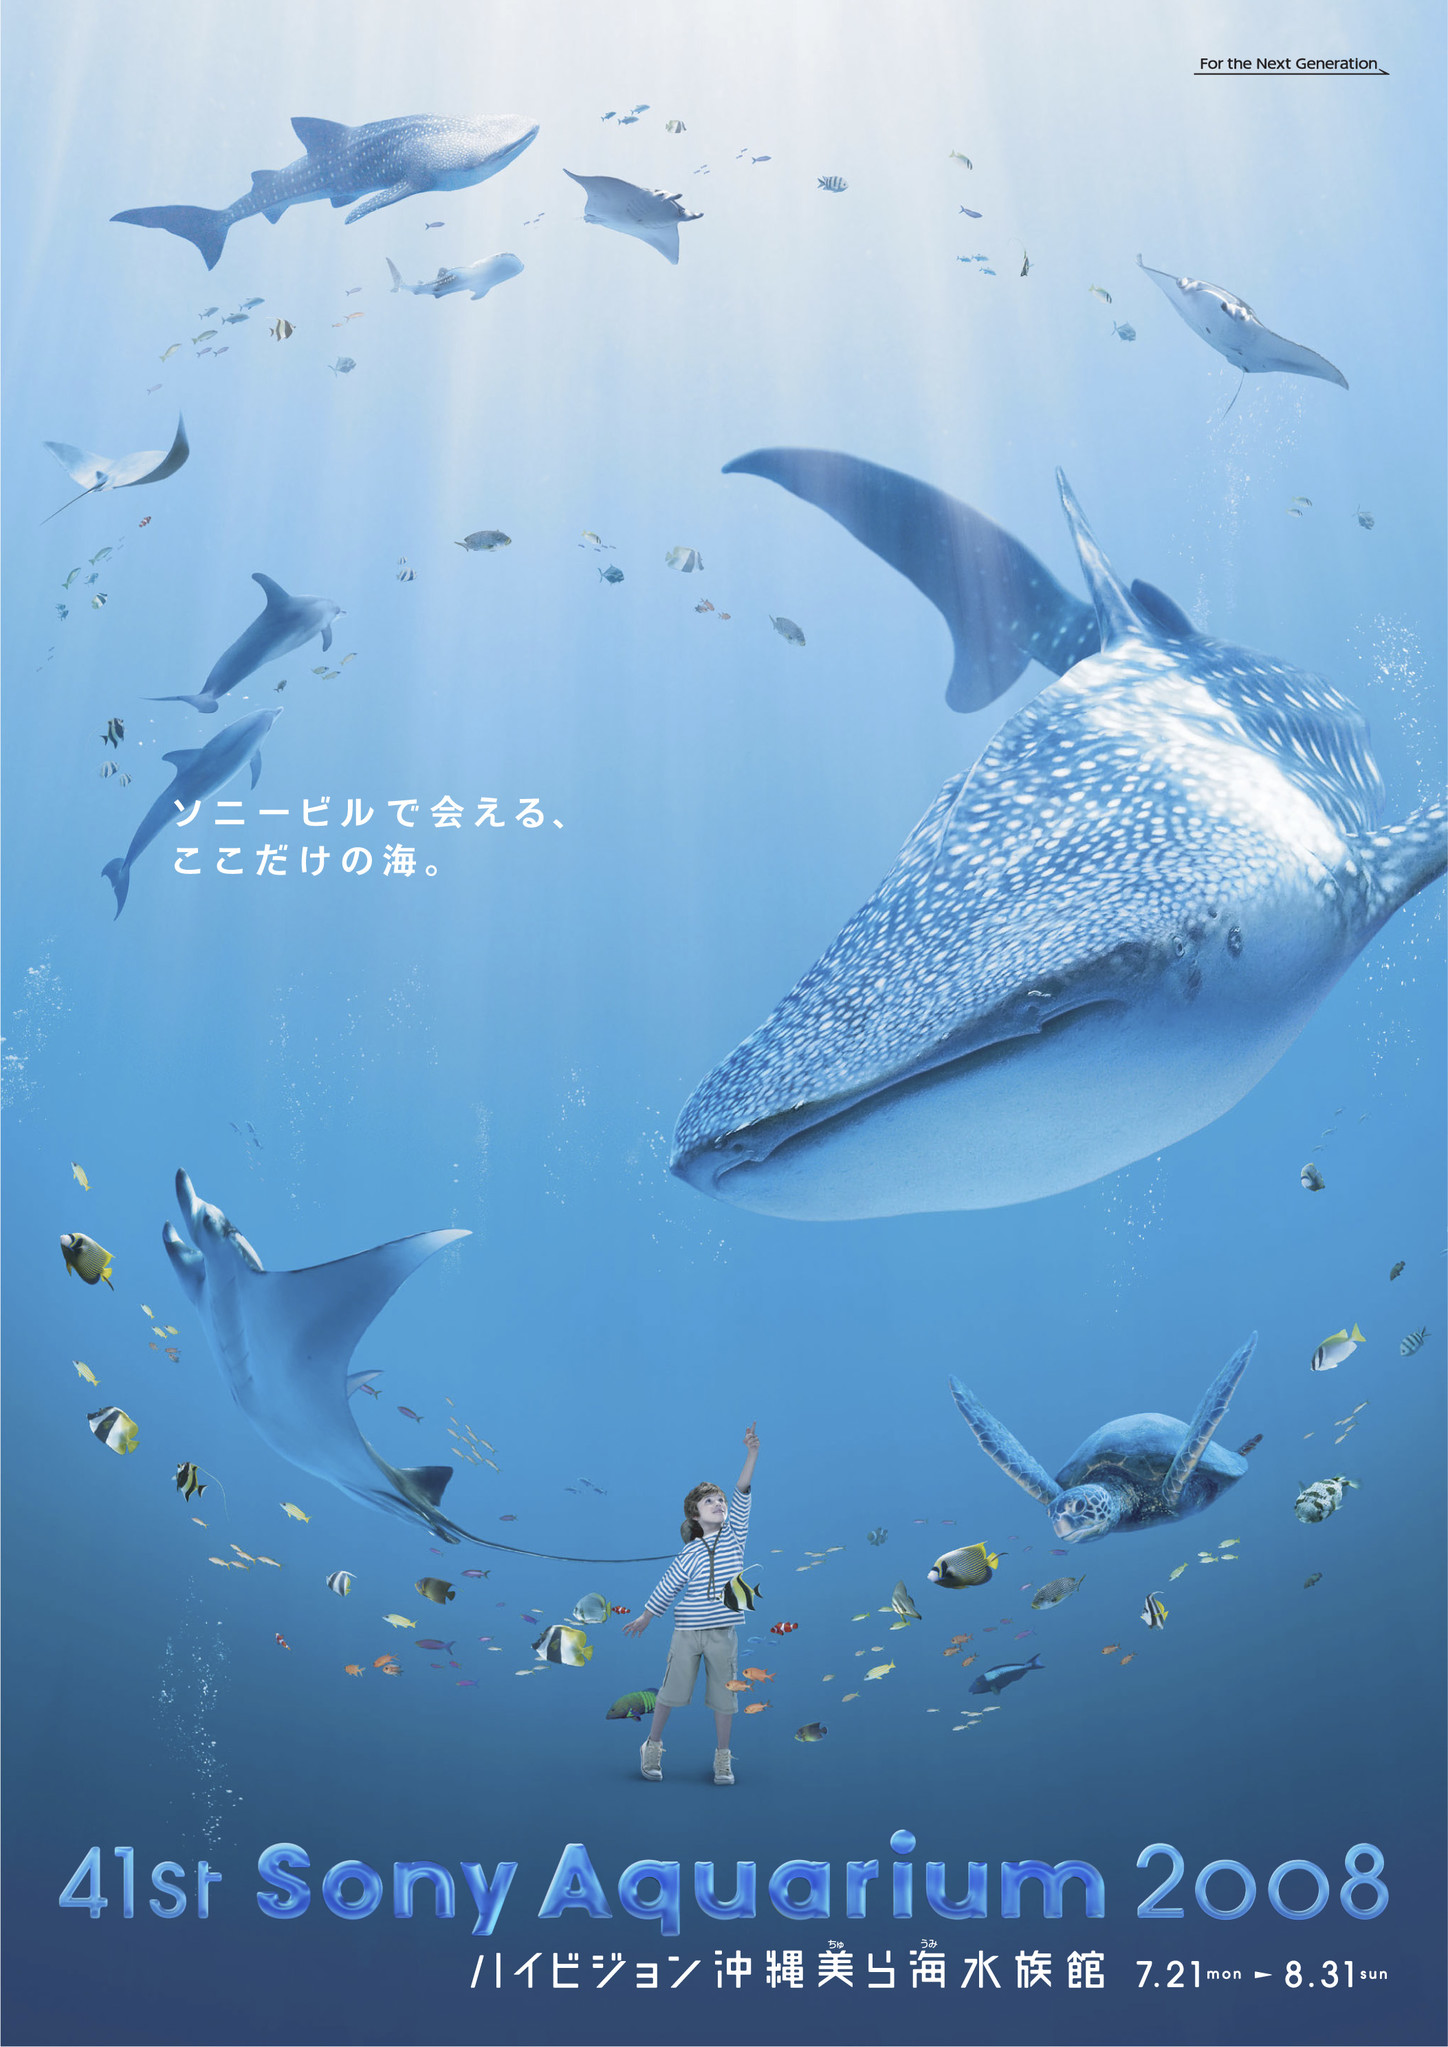 41st Sony Aquarium 08 銀座 ソニービルで沖縄の 美ら海 を探検しよう ソニー企業株式会社のプレスリリース